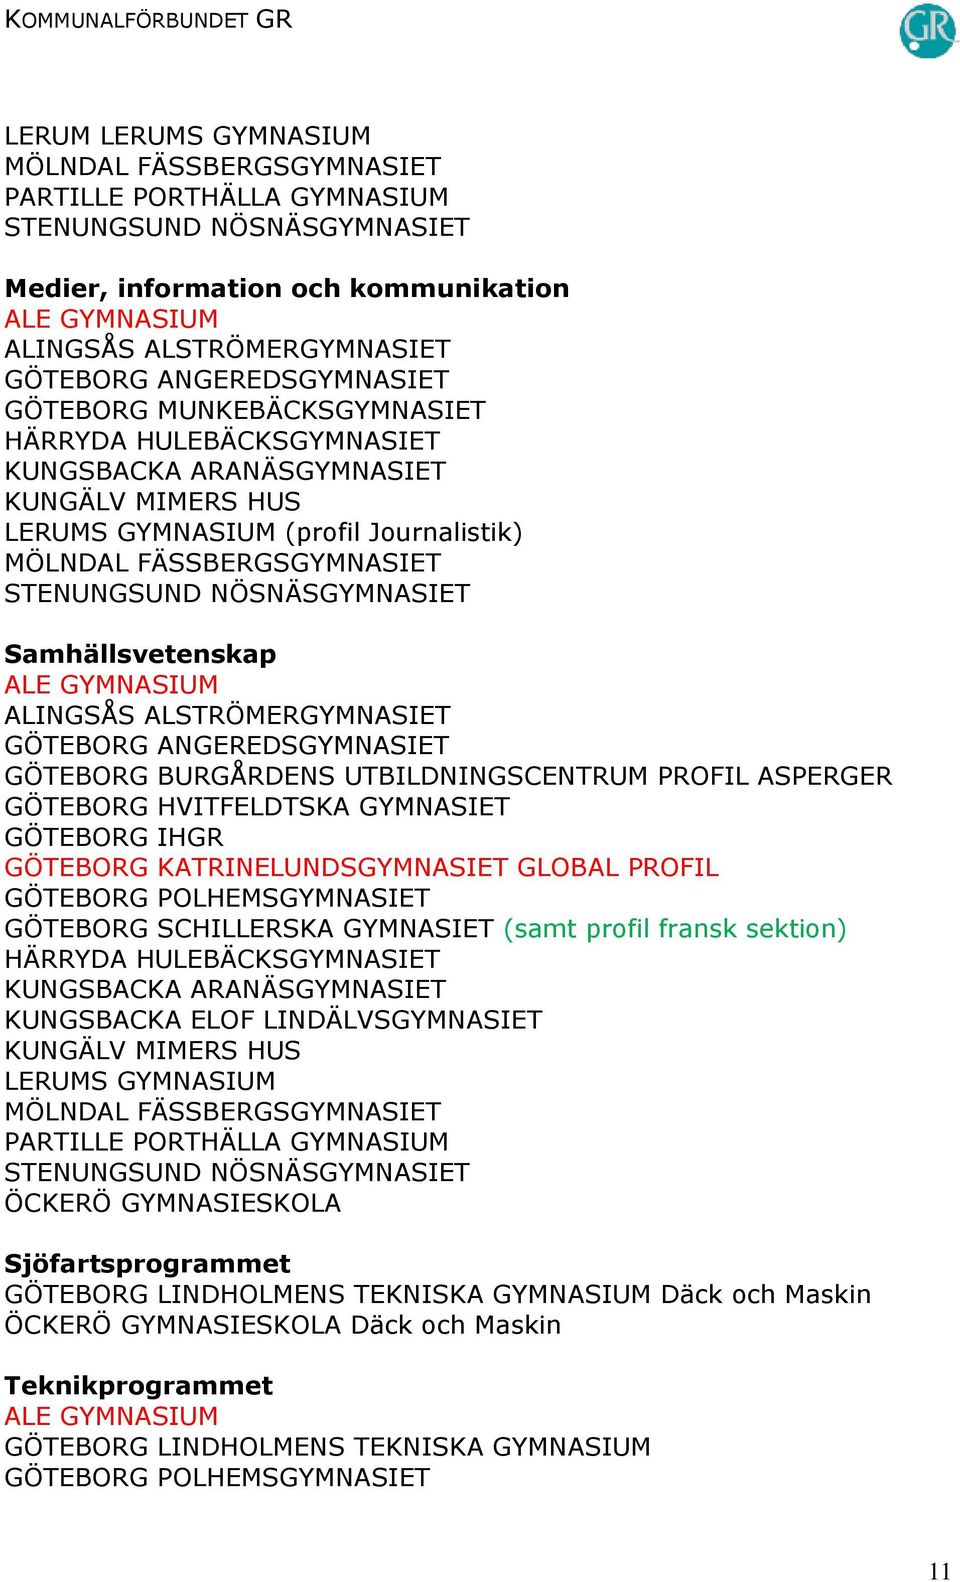 POLHEMSGYMNASIET GÖTEBORG SCHILLERSKA GYMNASIET (samt profil fransk sektion) PARTILLE PORTHÄLLA GYMNASIUM ÖCKERÖ